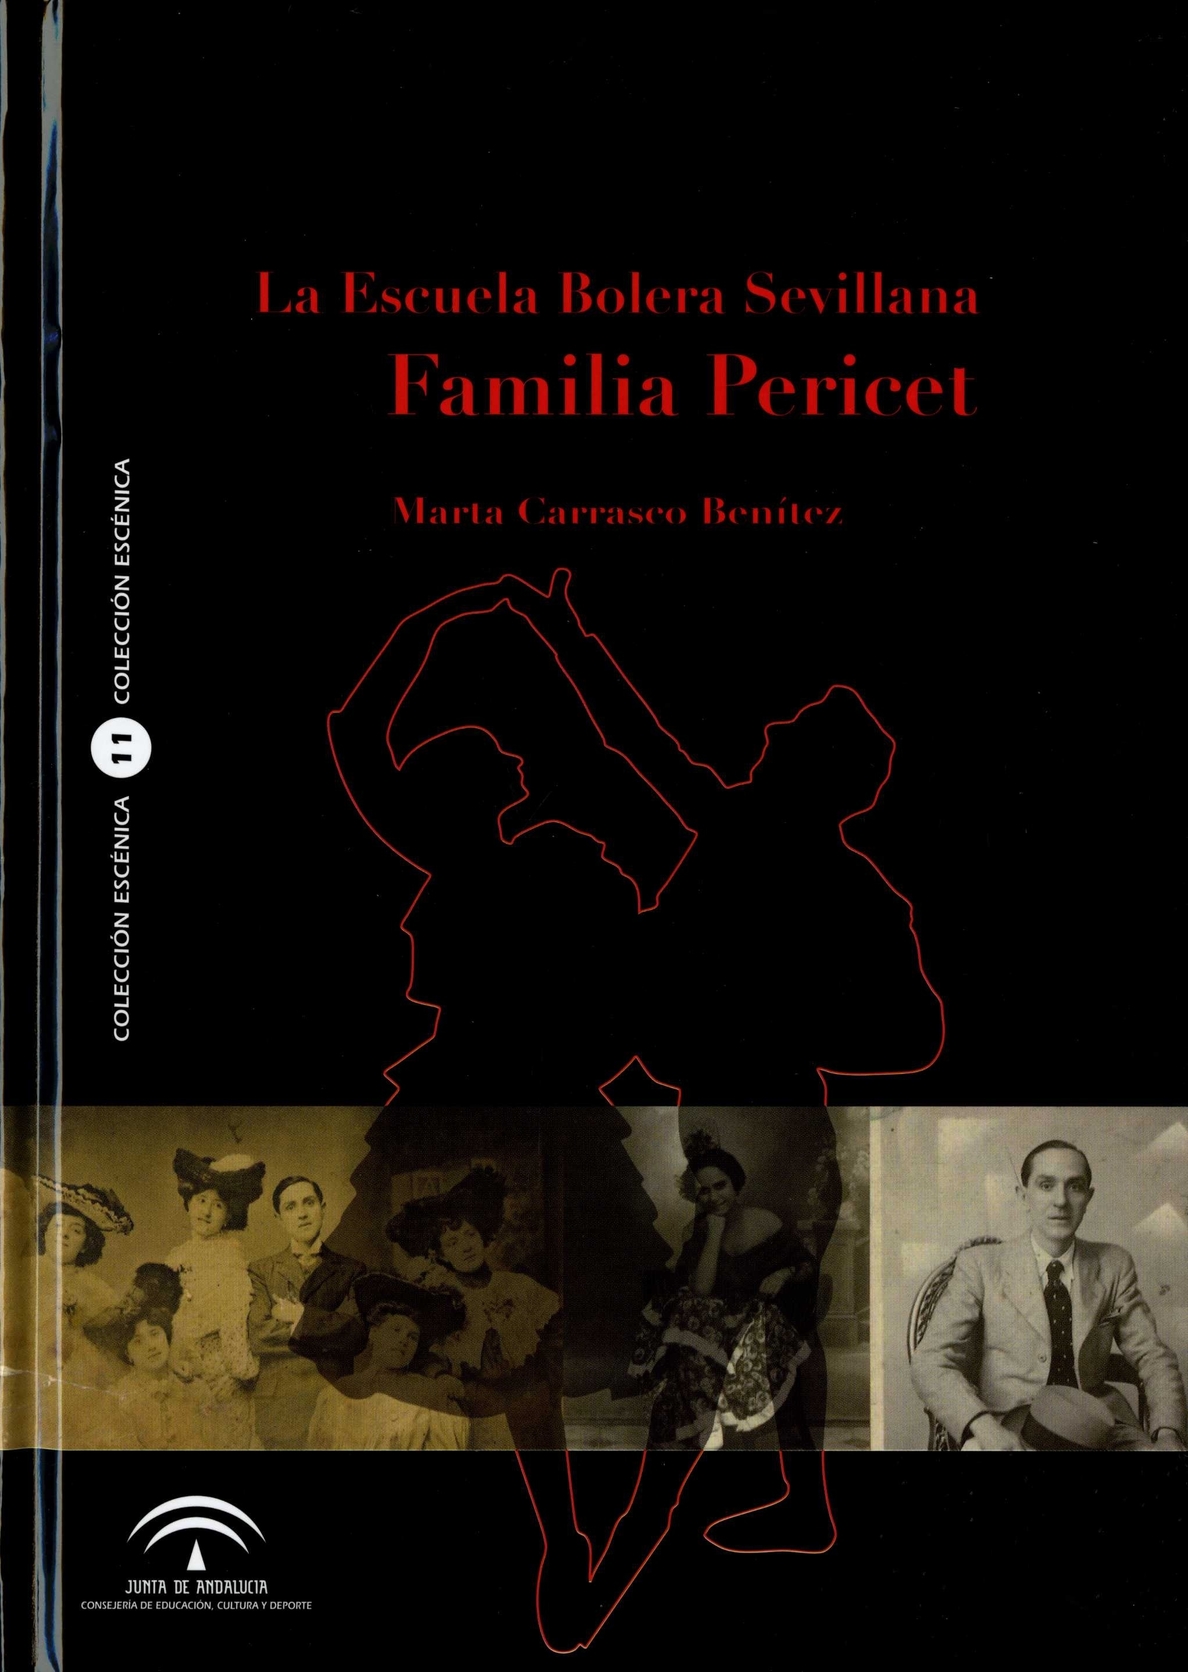 Junta celebra el Día de la Danza con la presentación del libro »La escuela Bolera Sevillana»